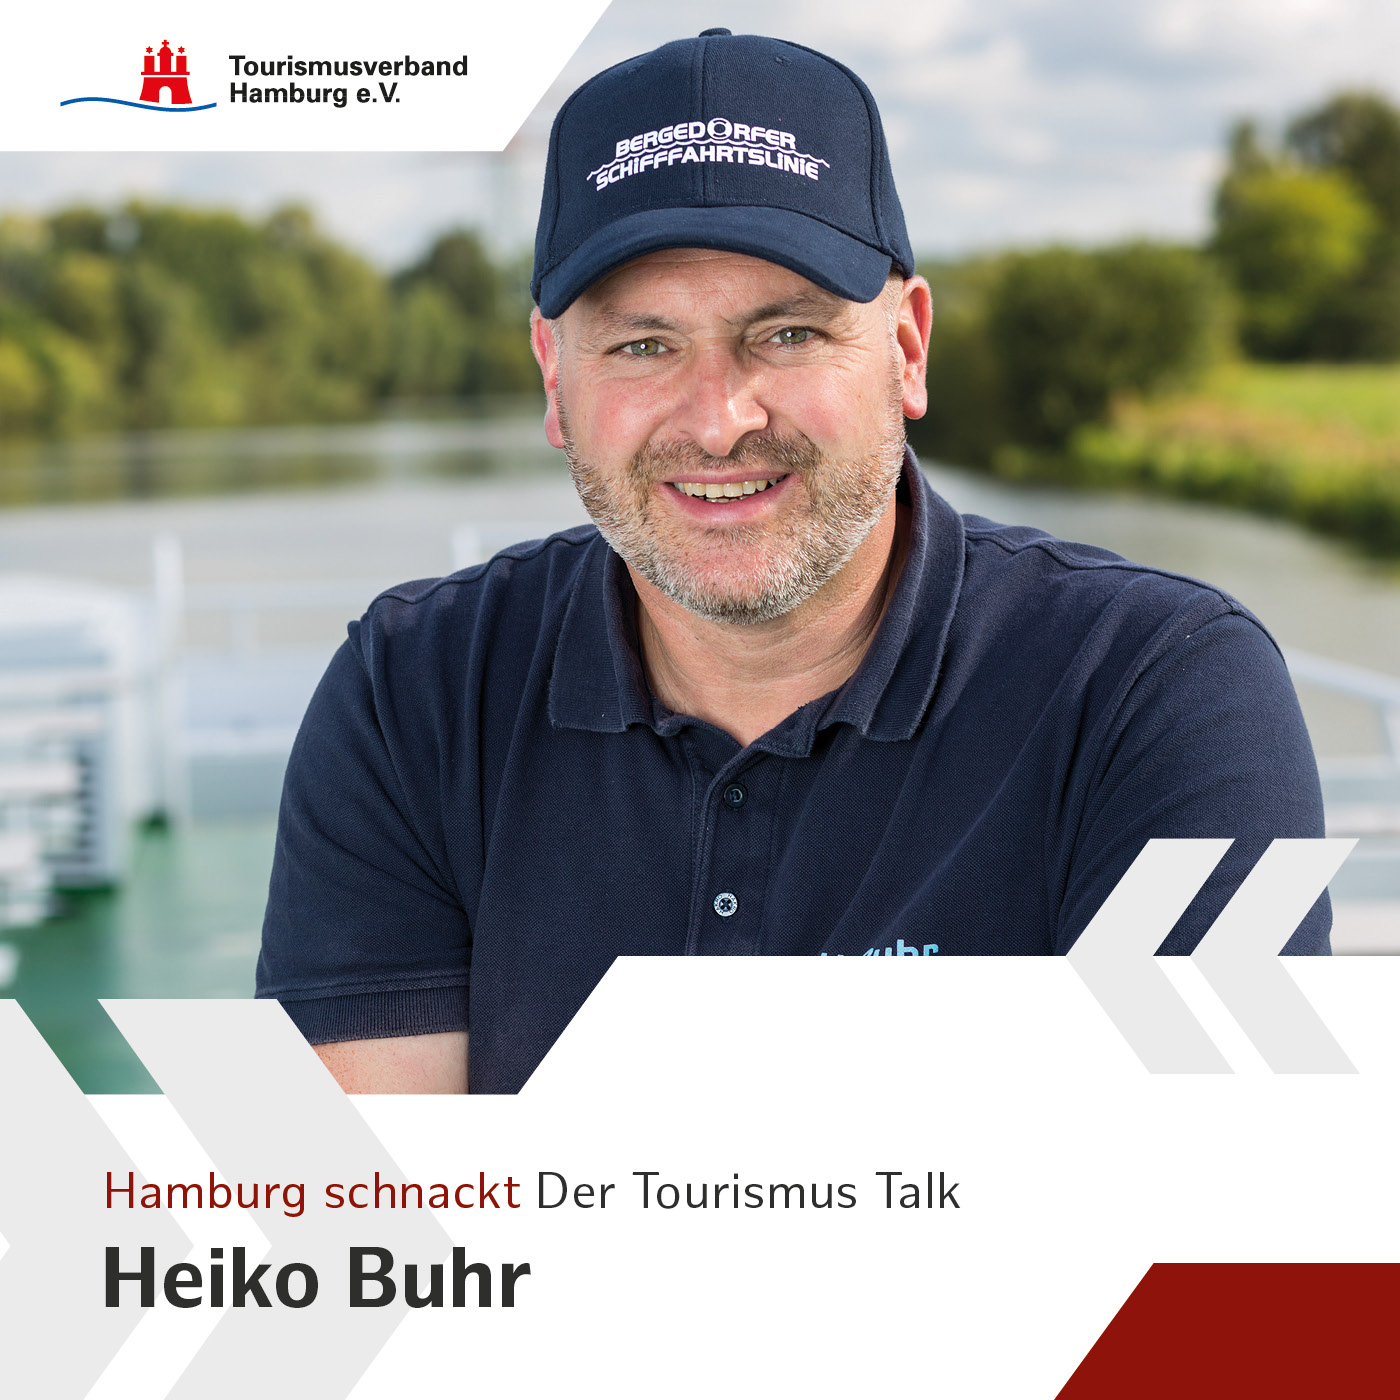 Hamburg schnackt mit Heiko Buhr